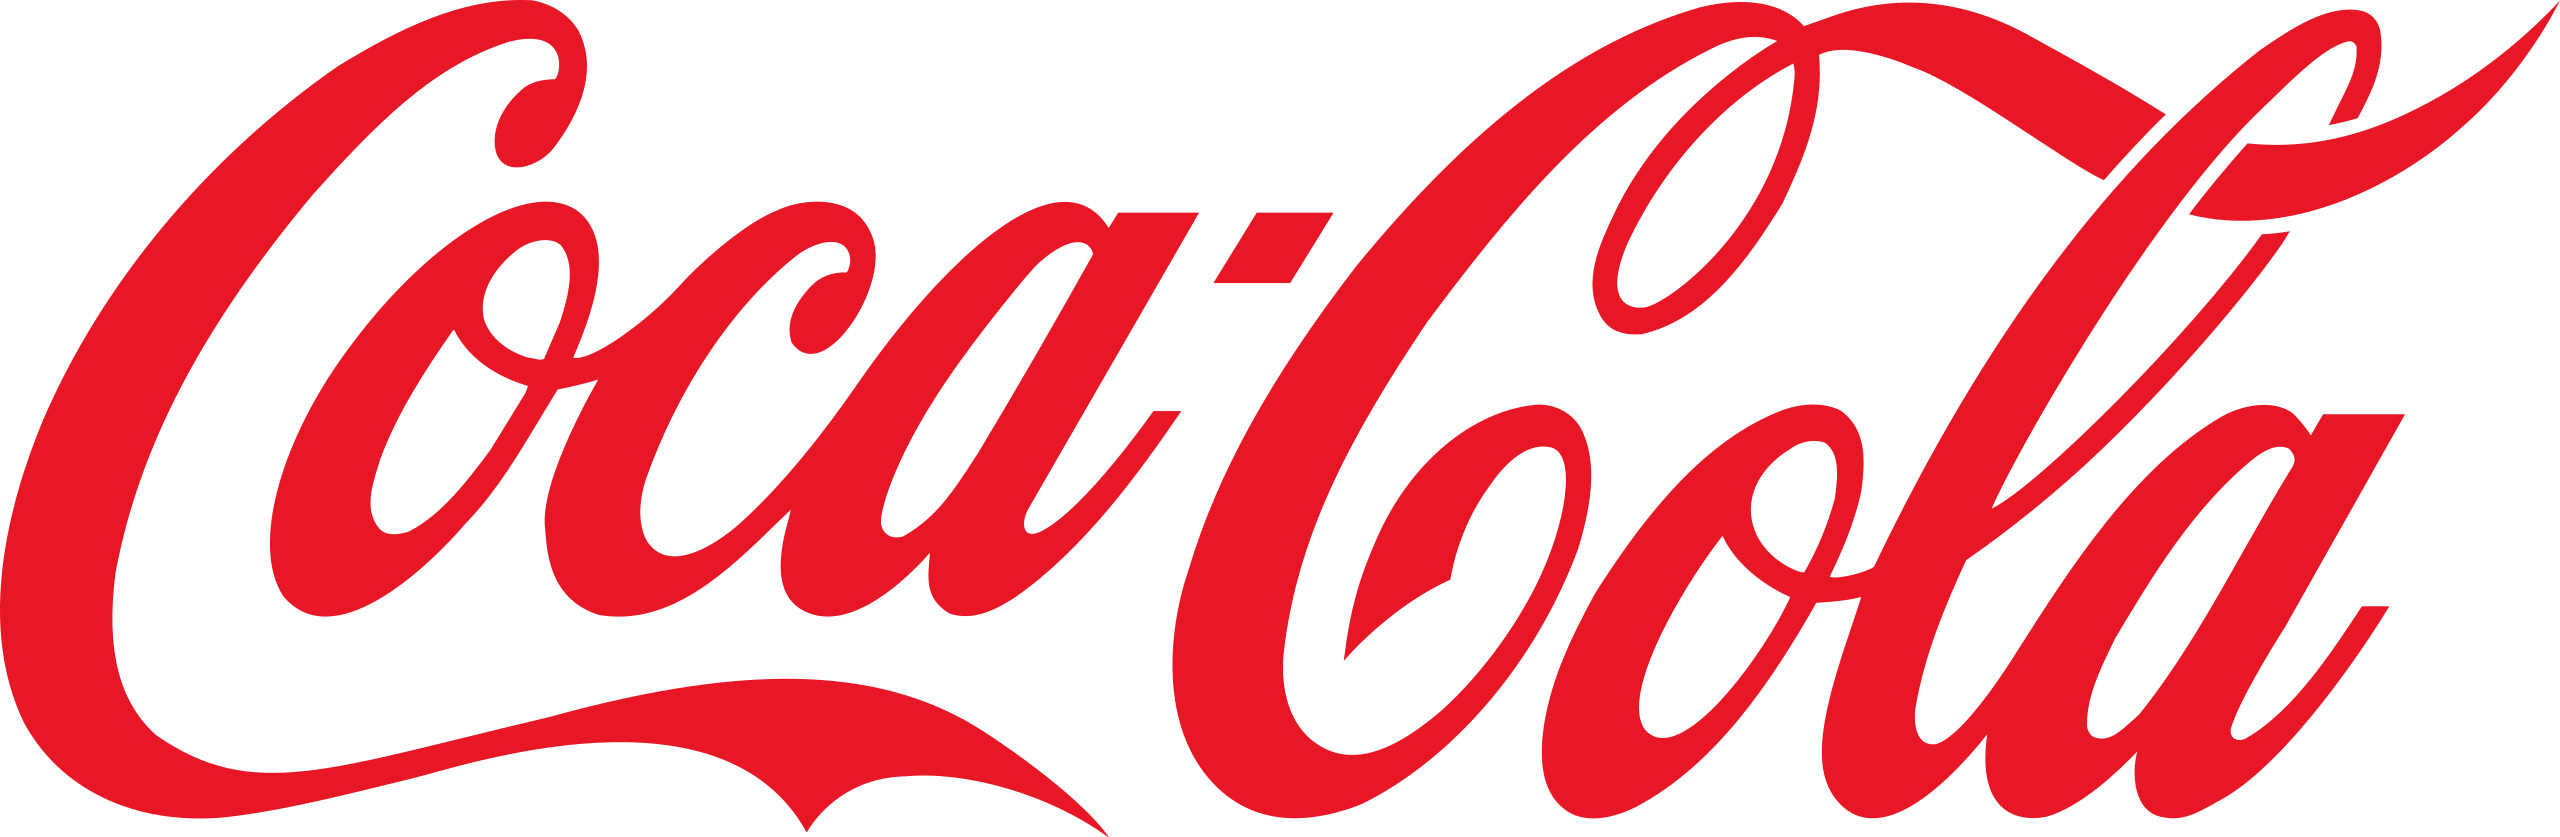 Coca-Cola logó